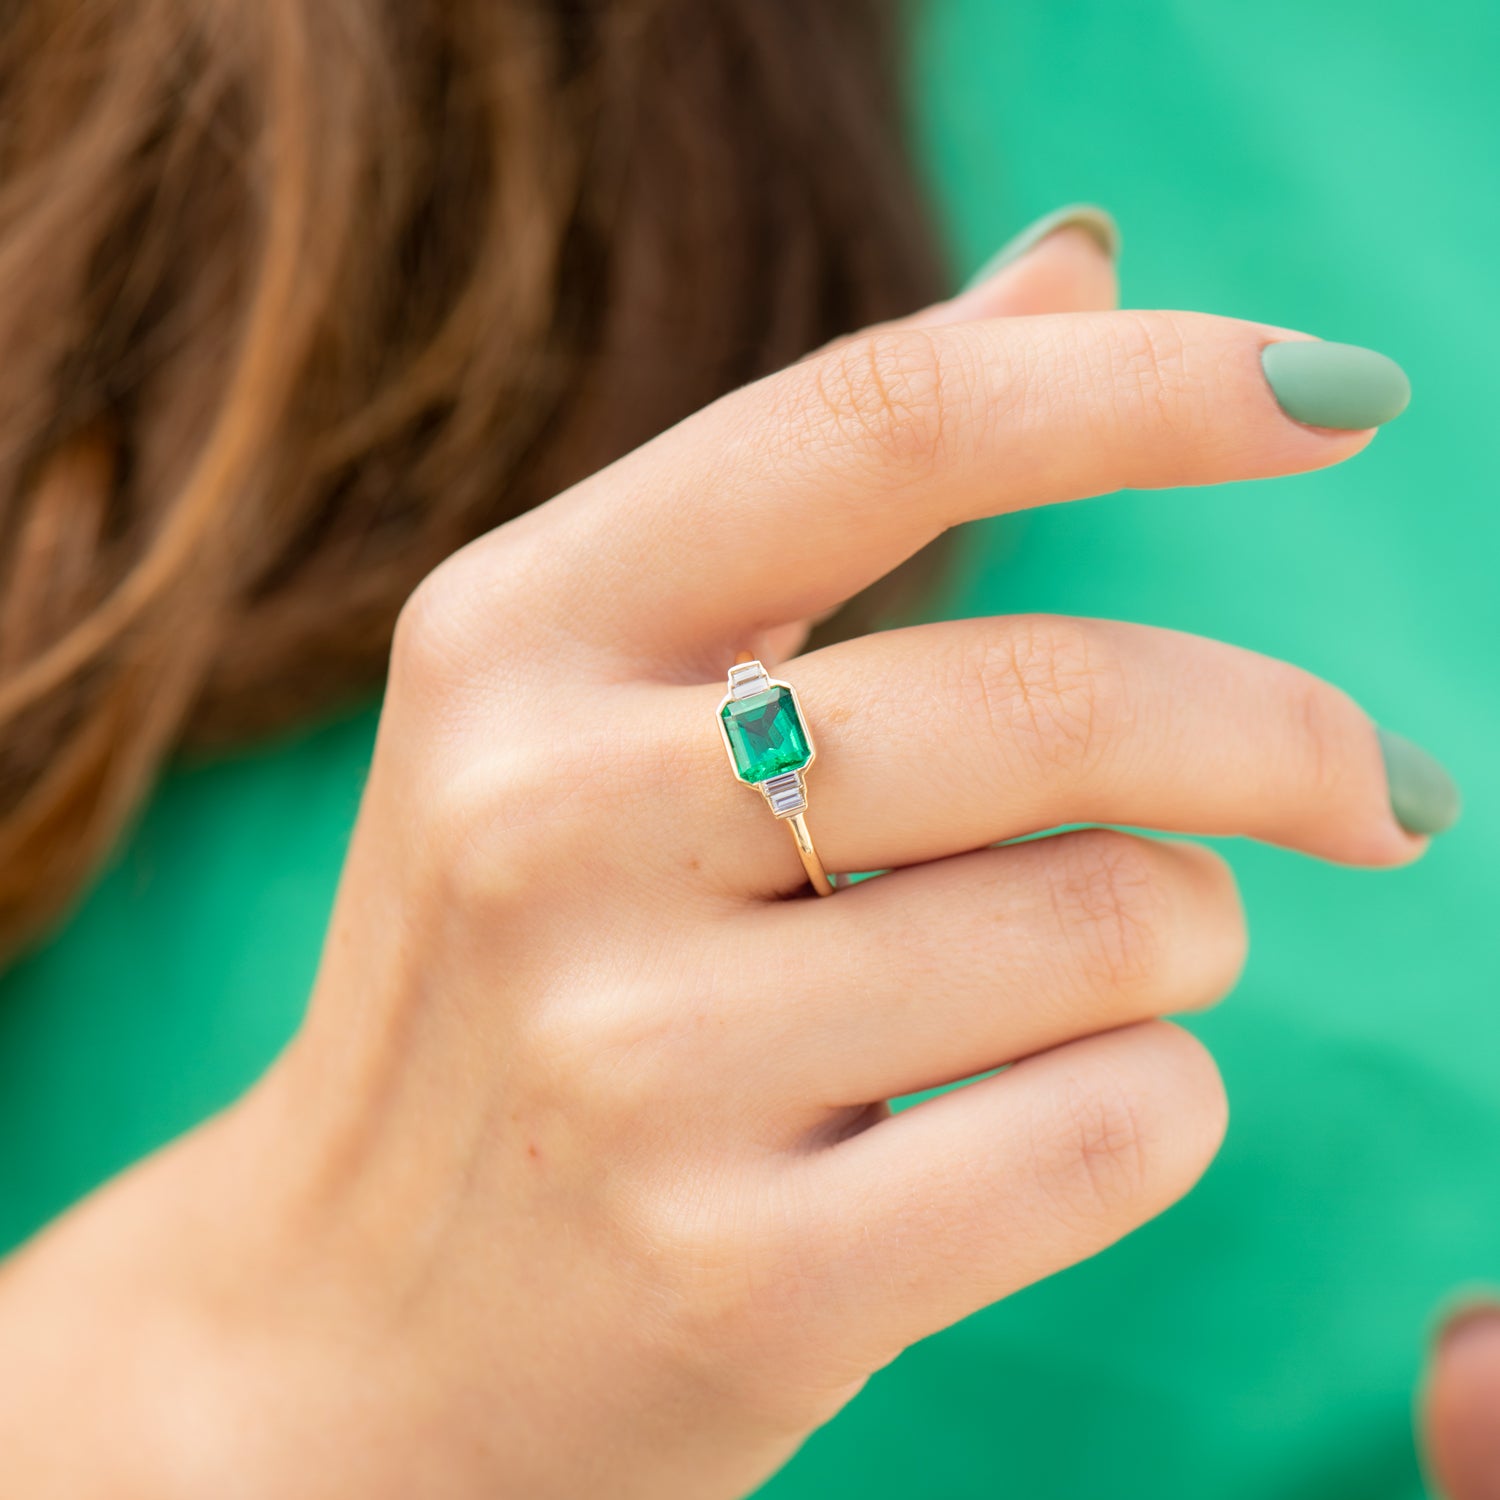 Emerald Engagement Rings - Shiny Rock Polished